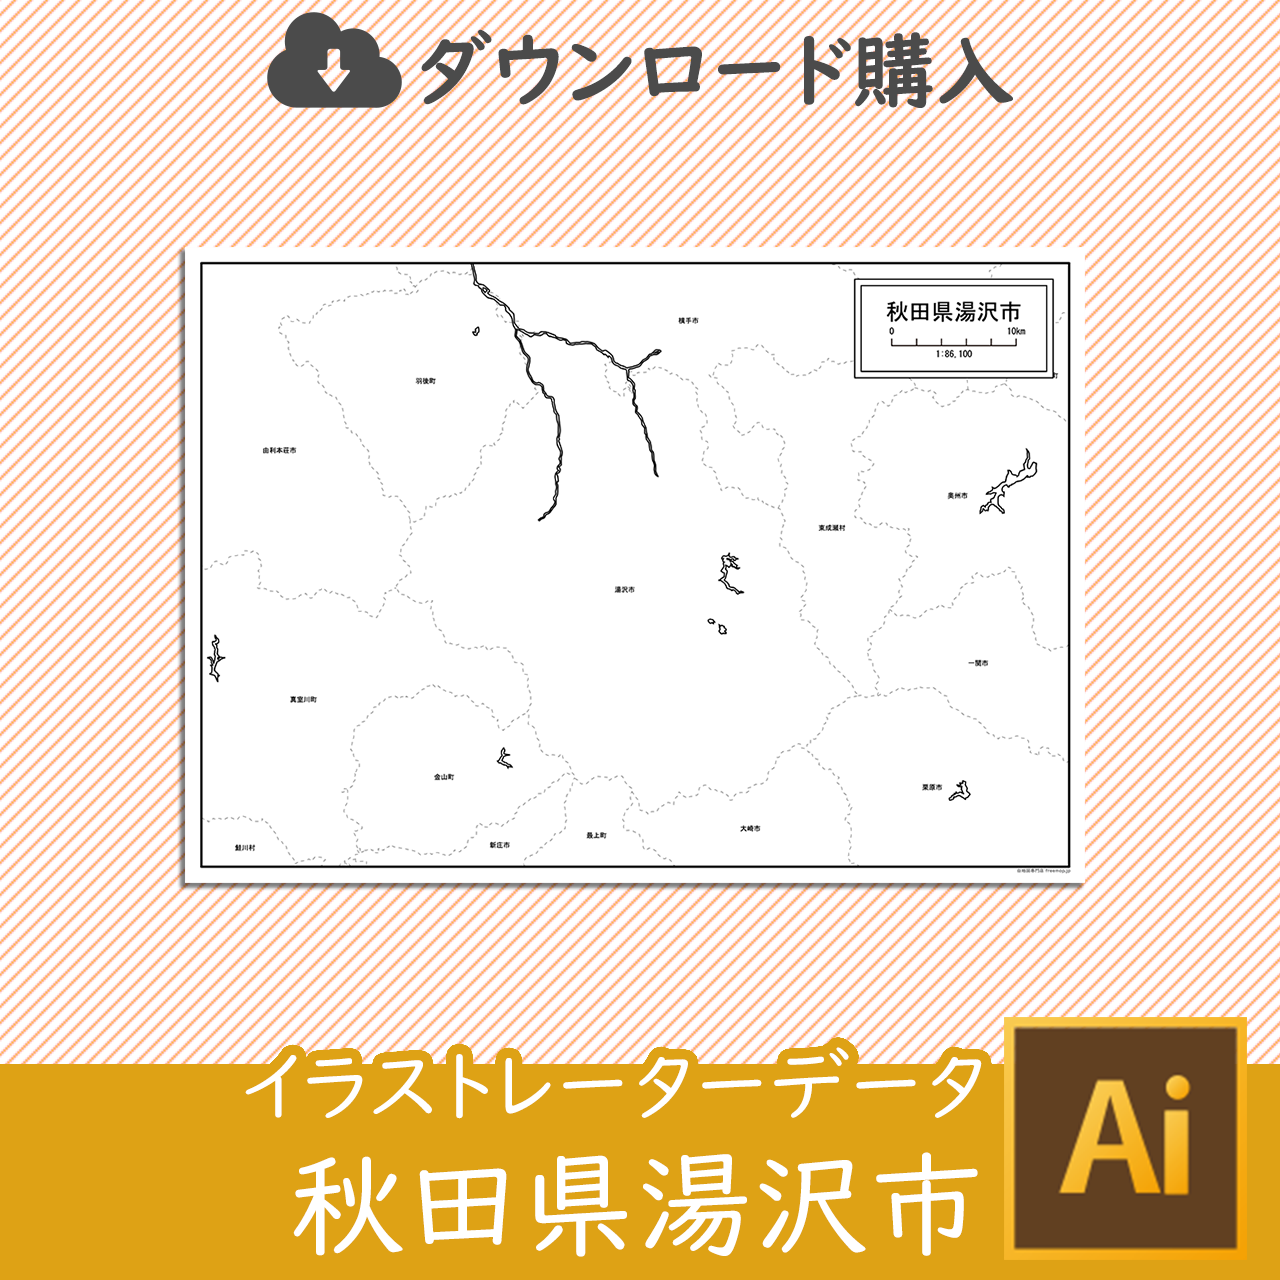 湯沢市のaiデータのサムネイル画像